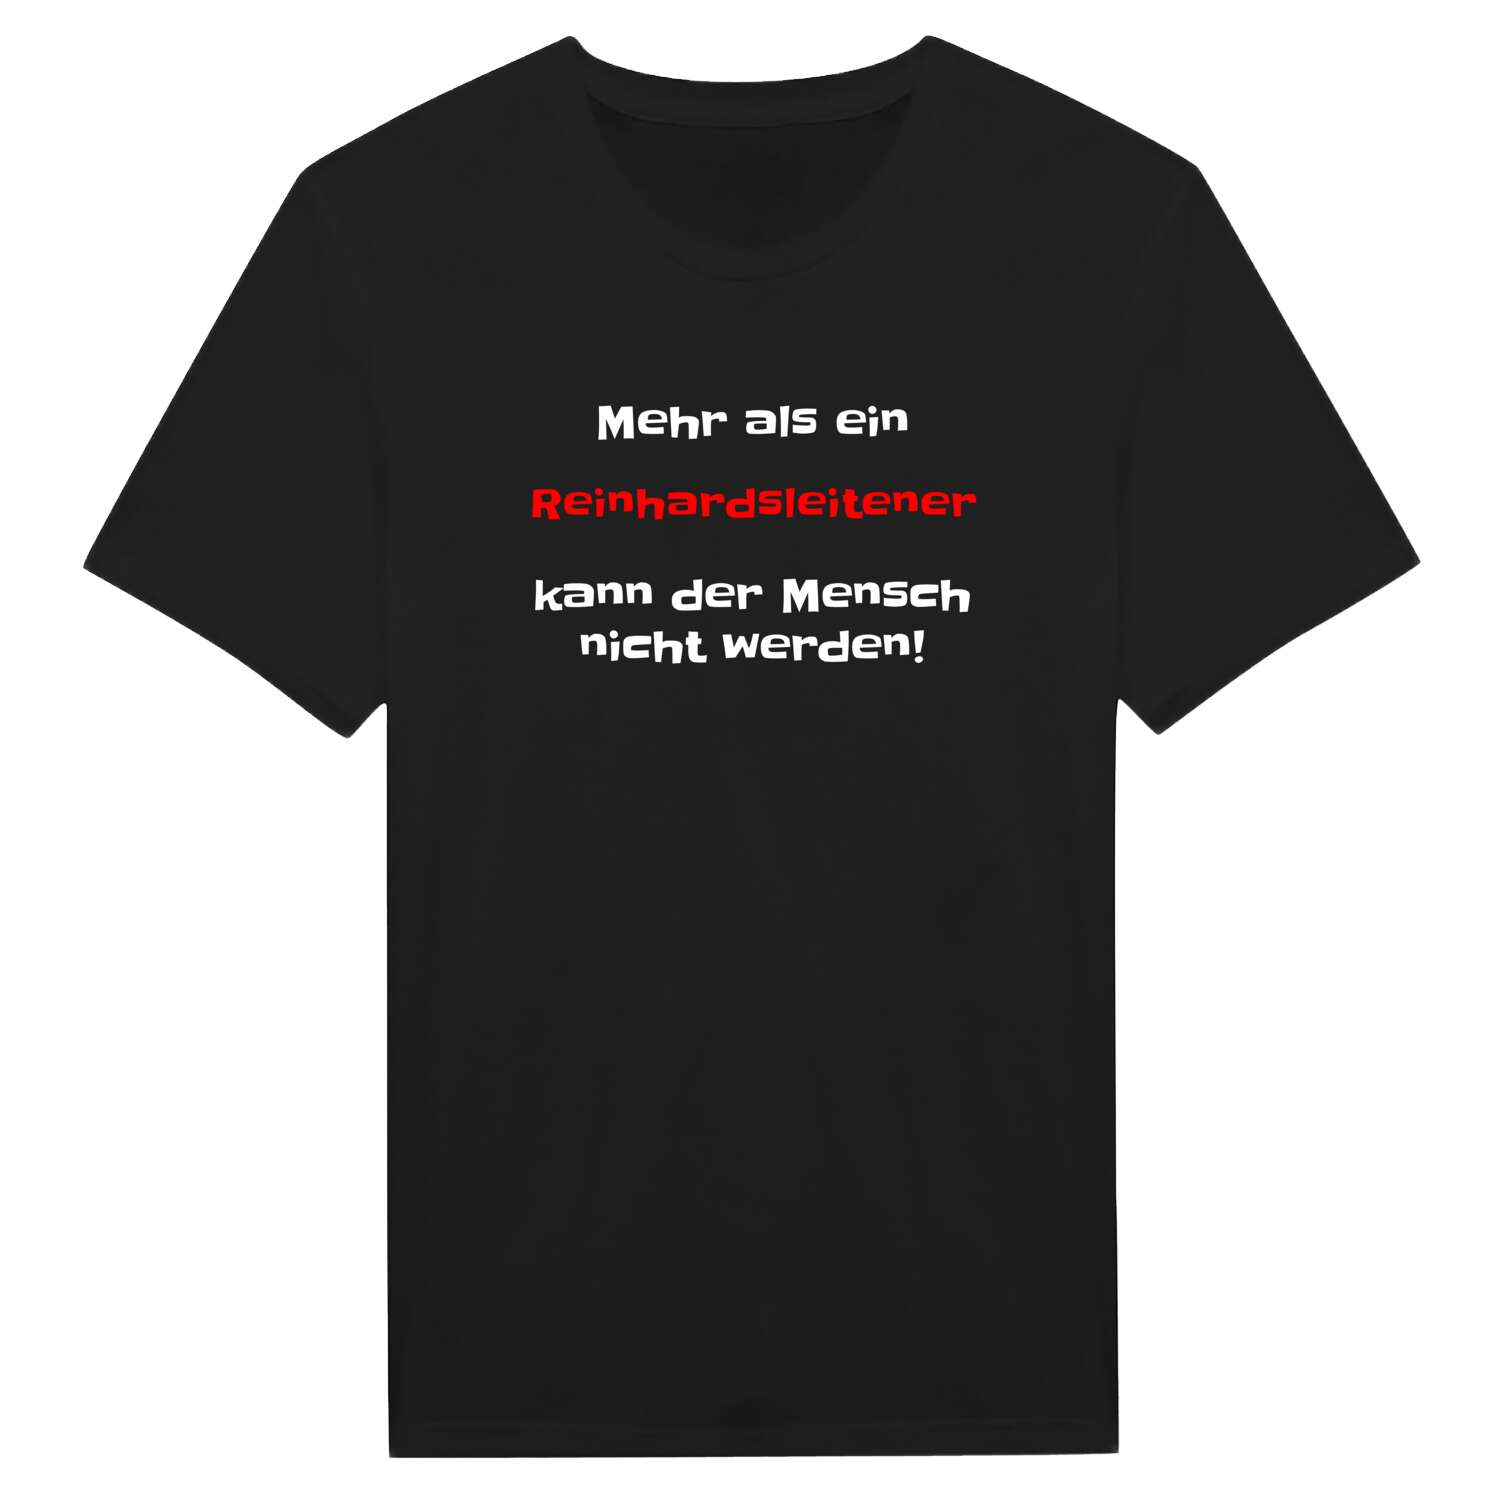 Reinhardsleiten T-Shirt »Mehr als ein«